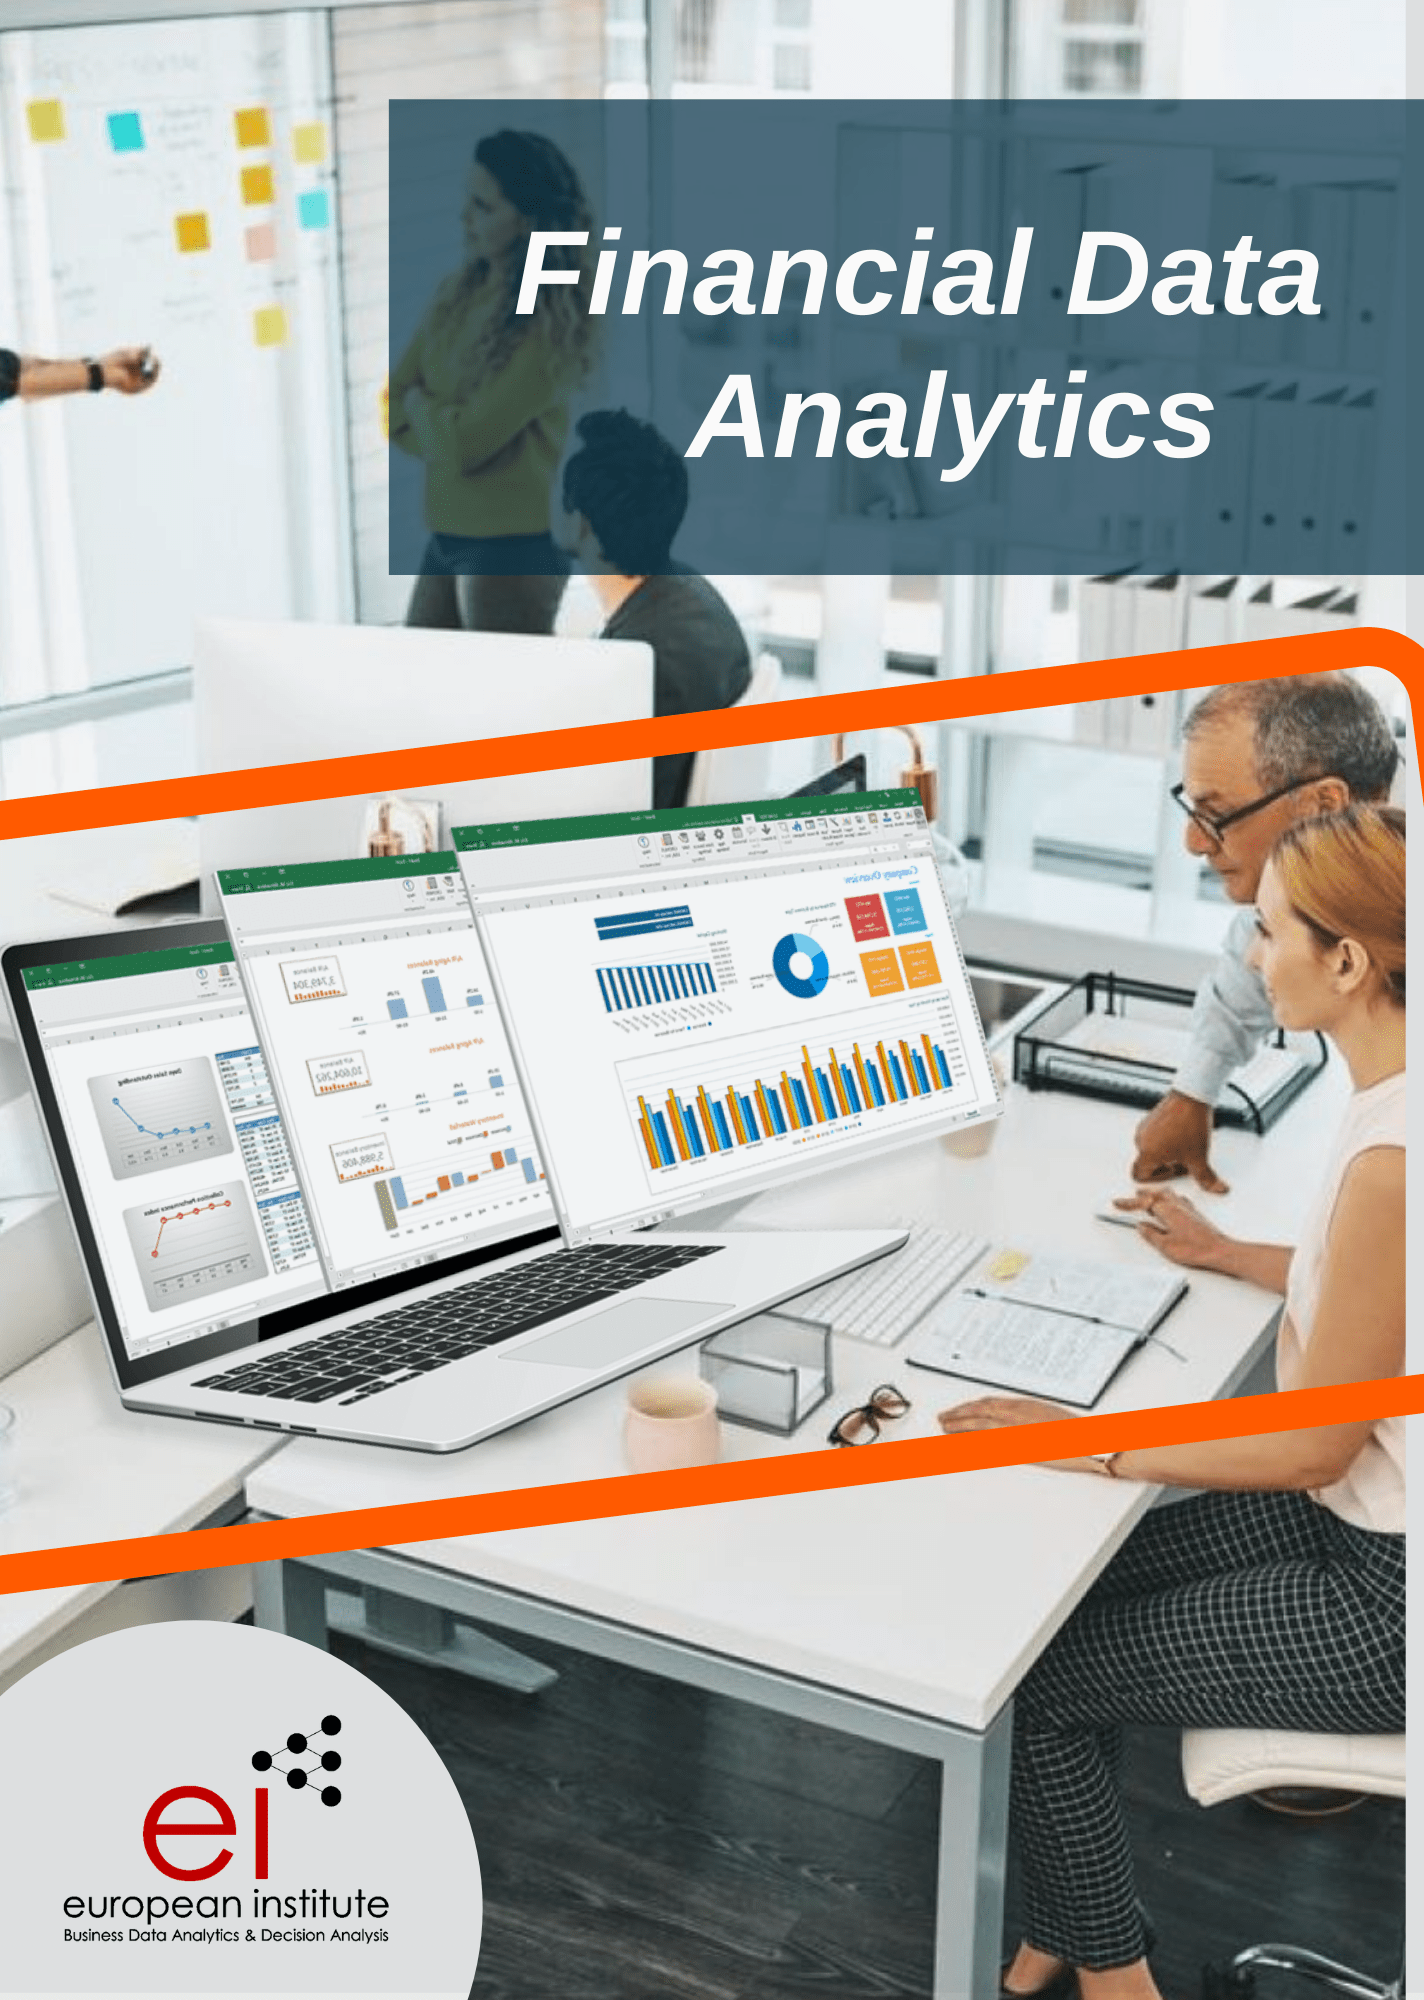 analysis, analytics, business